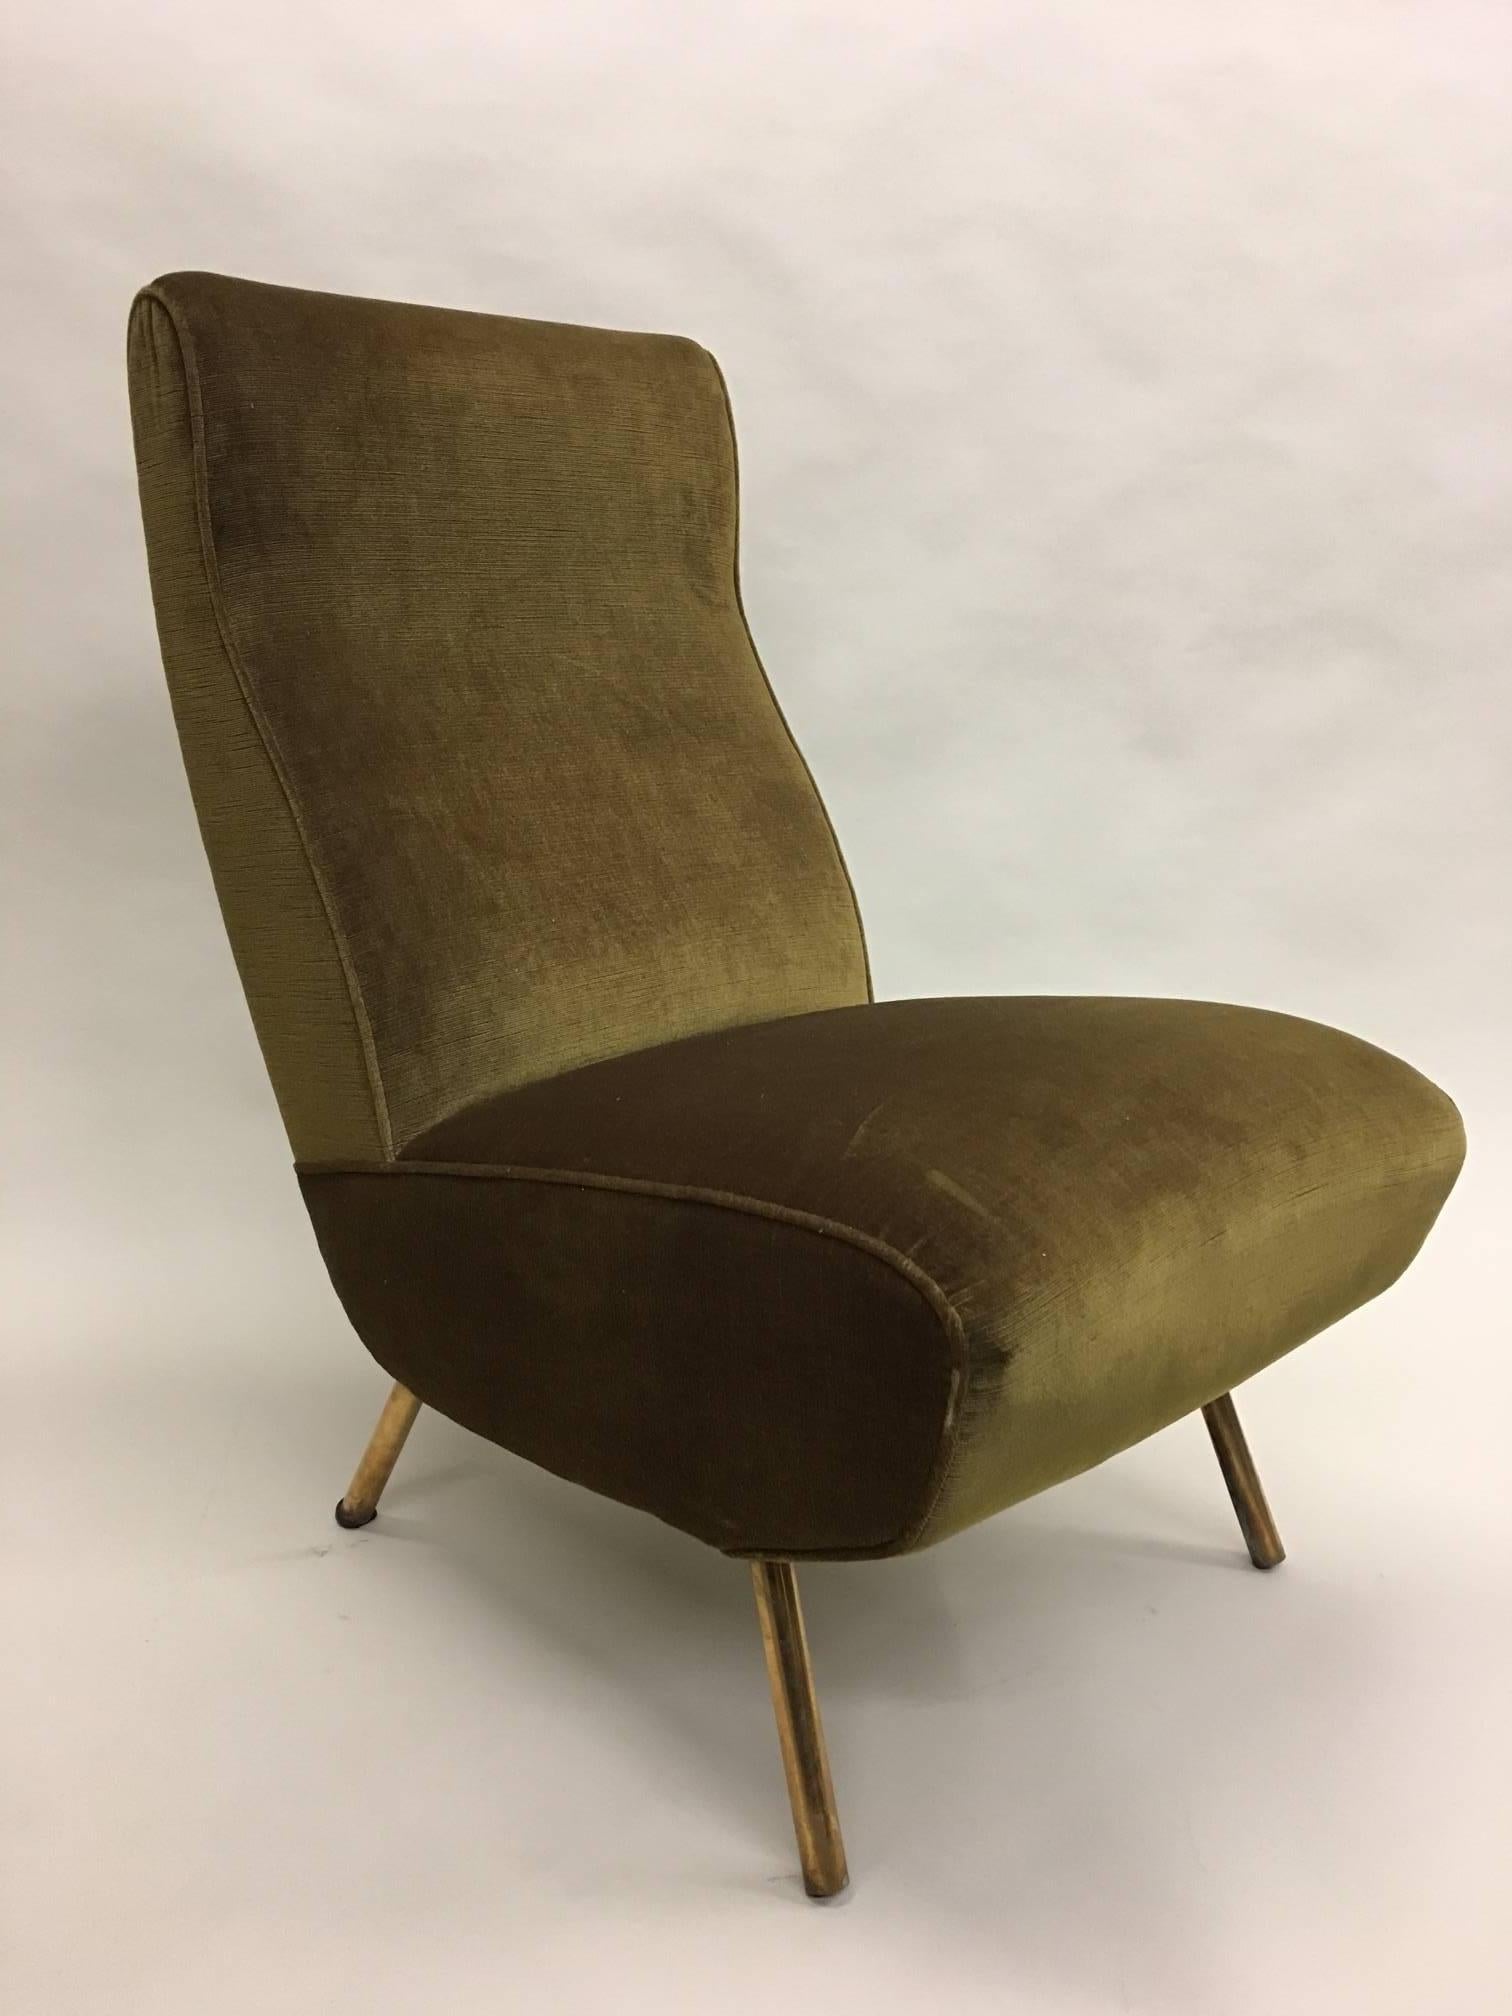 Ein seltenes und wichtiges Paar italienischer Triennale Charis von Marco Zanuso aus der Jahrhundertmitte um 1951. Zanuso entwarf diese Triennale-Sessel in Verbindung mit dem Triennale-Sofa für eine internationale Ausstellung im Jahr 1951; der